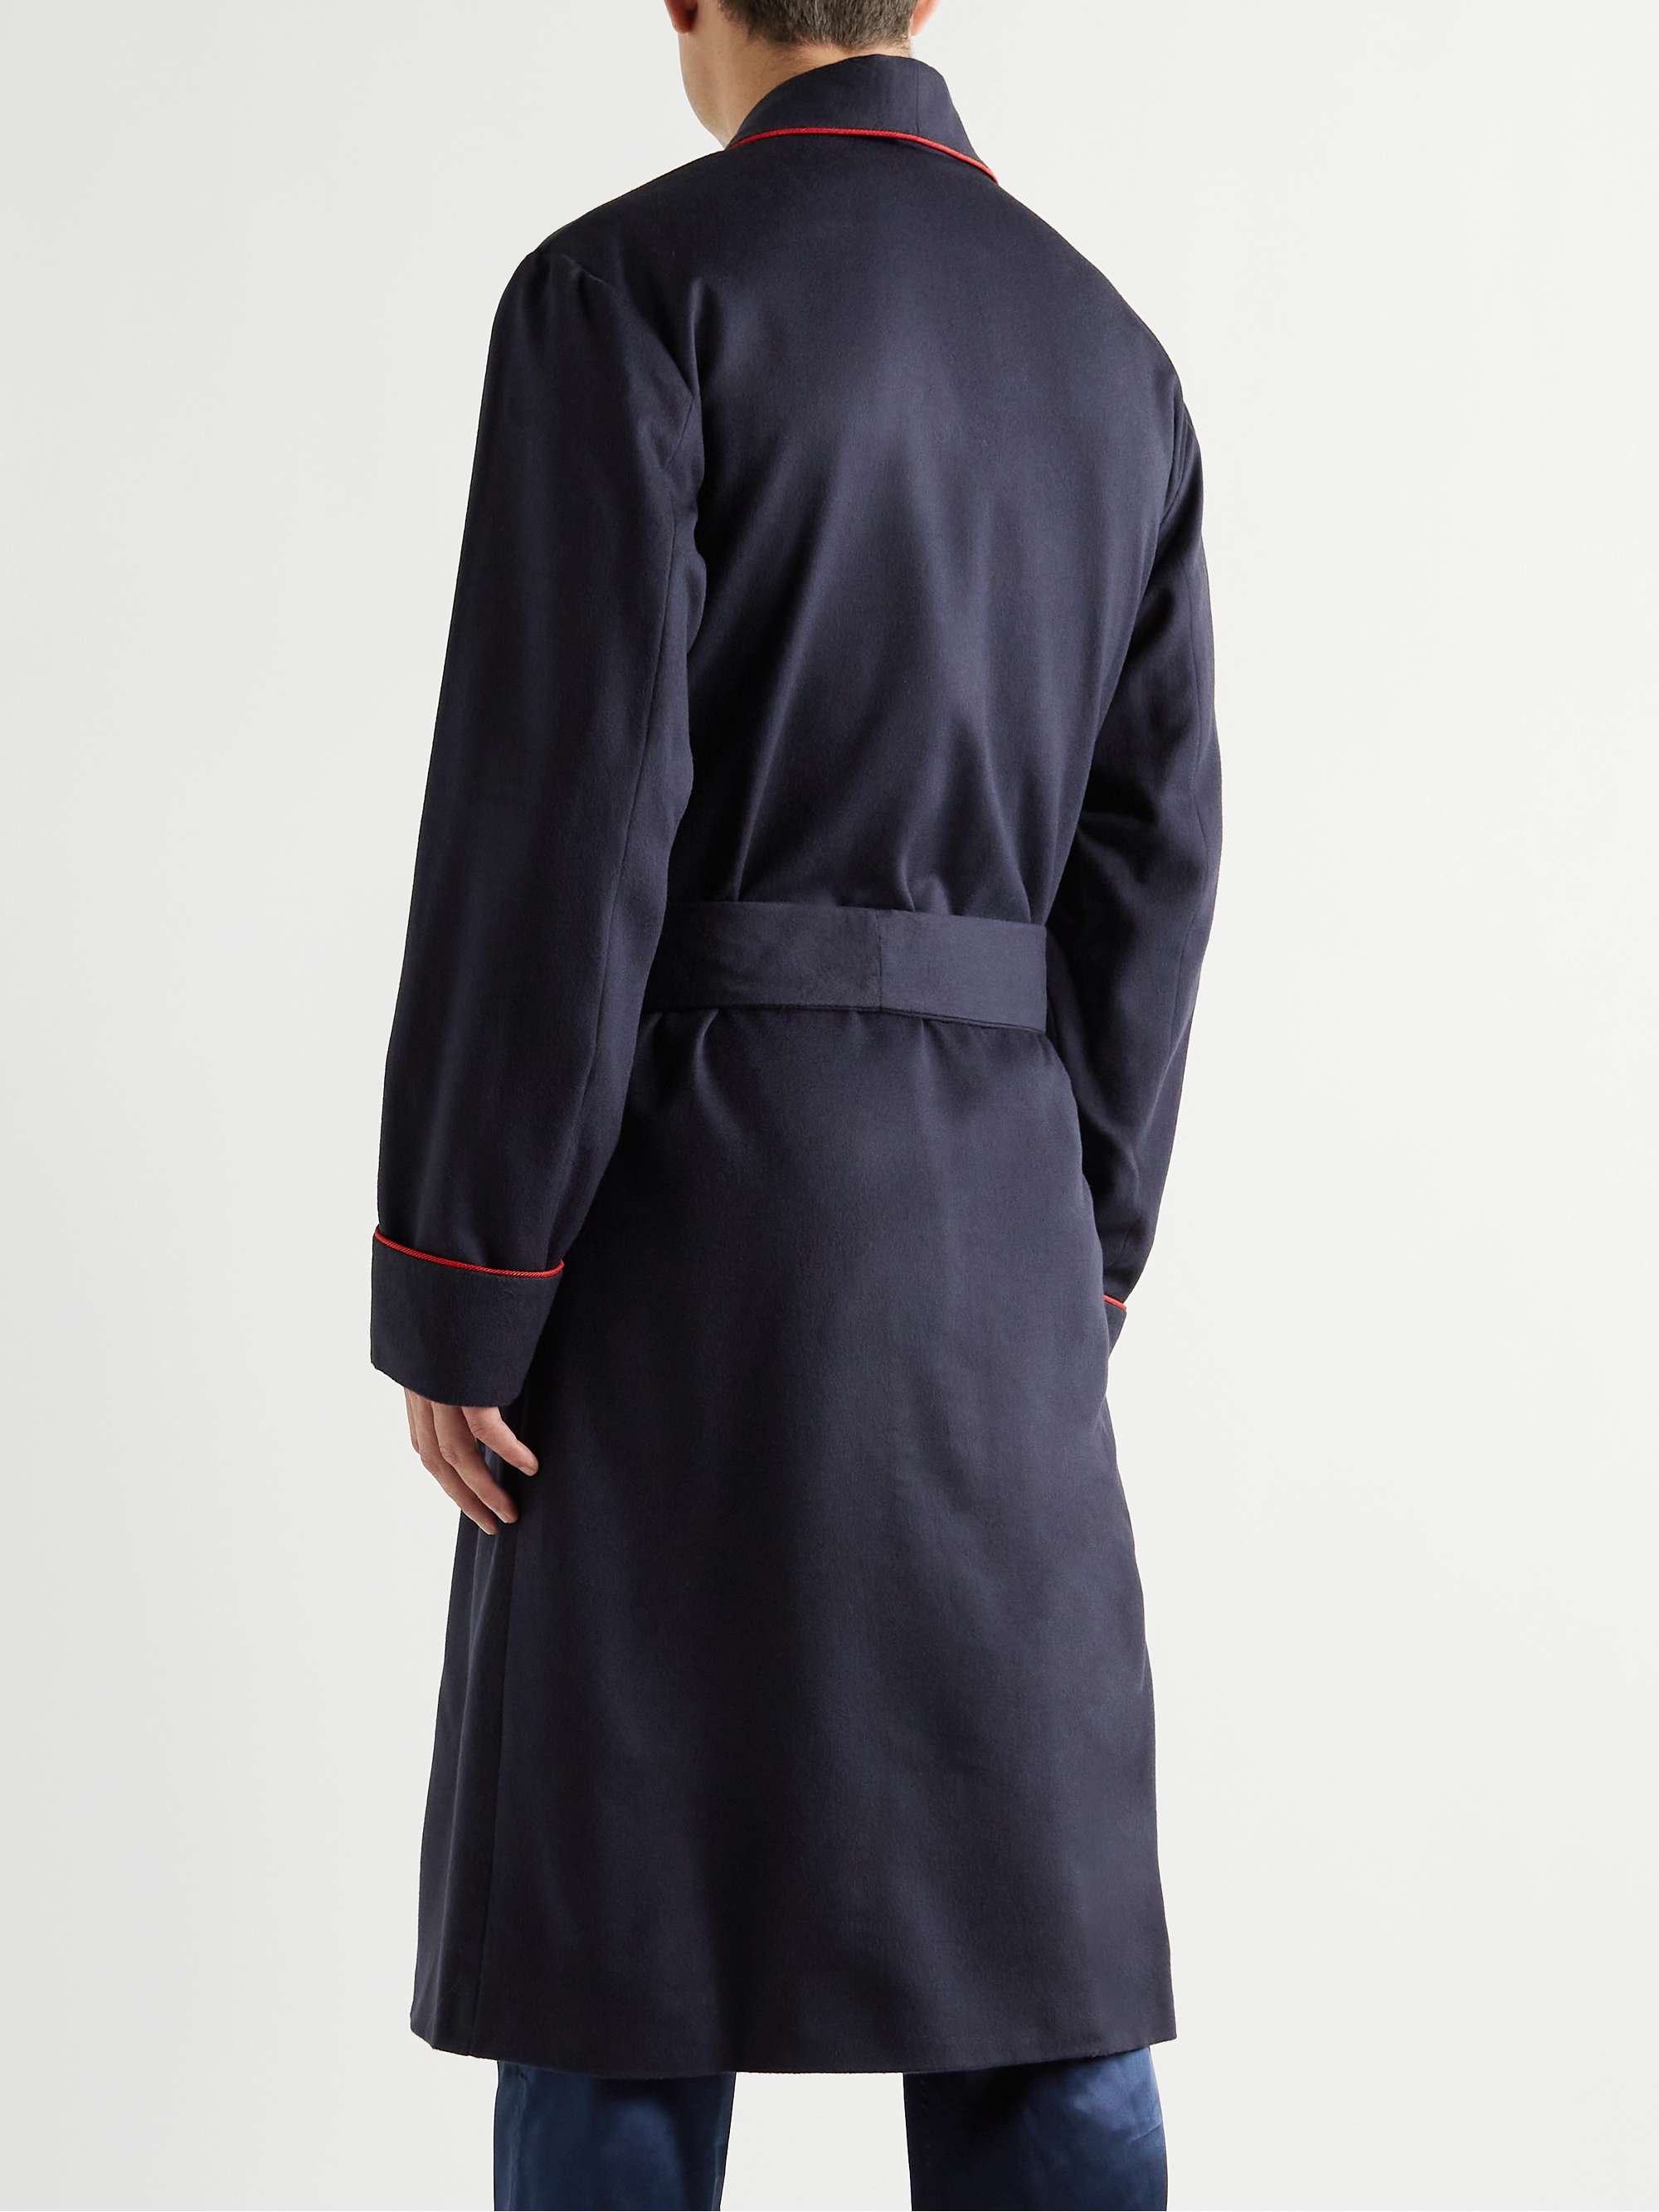 RUBINACCI Wool and Cashmere-Blend Robe